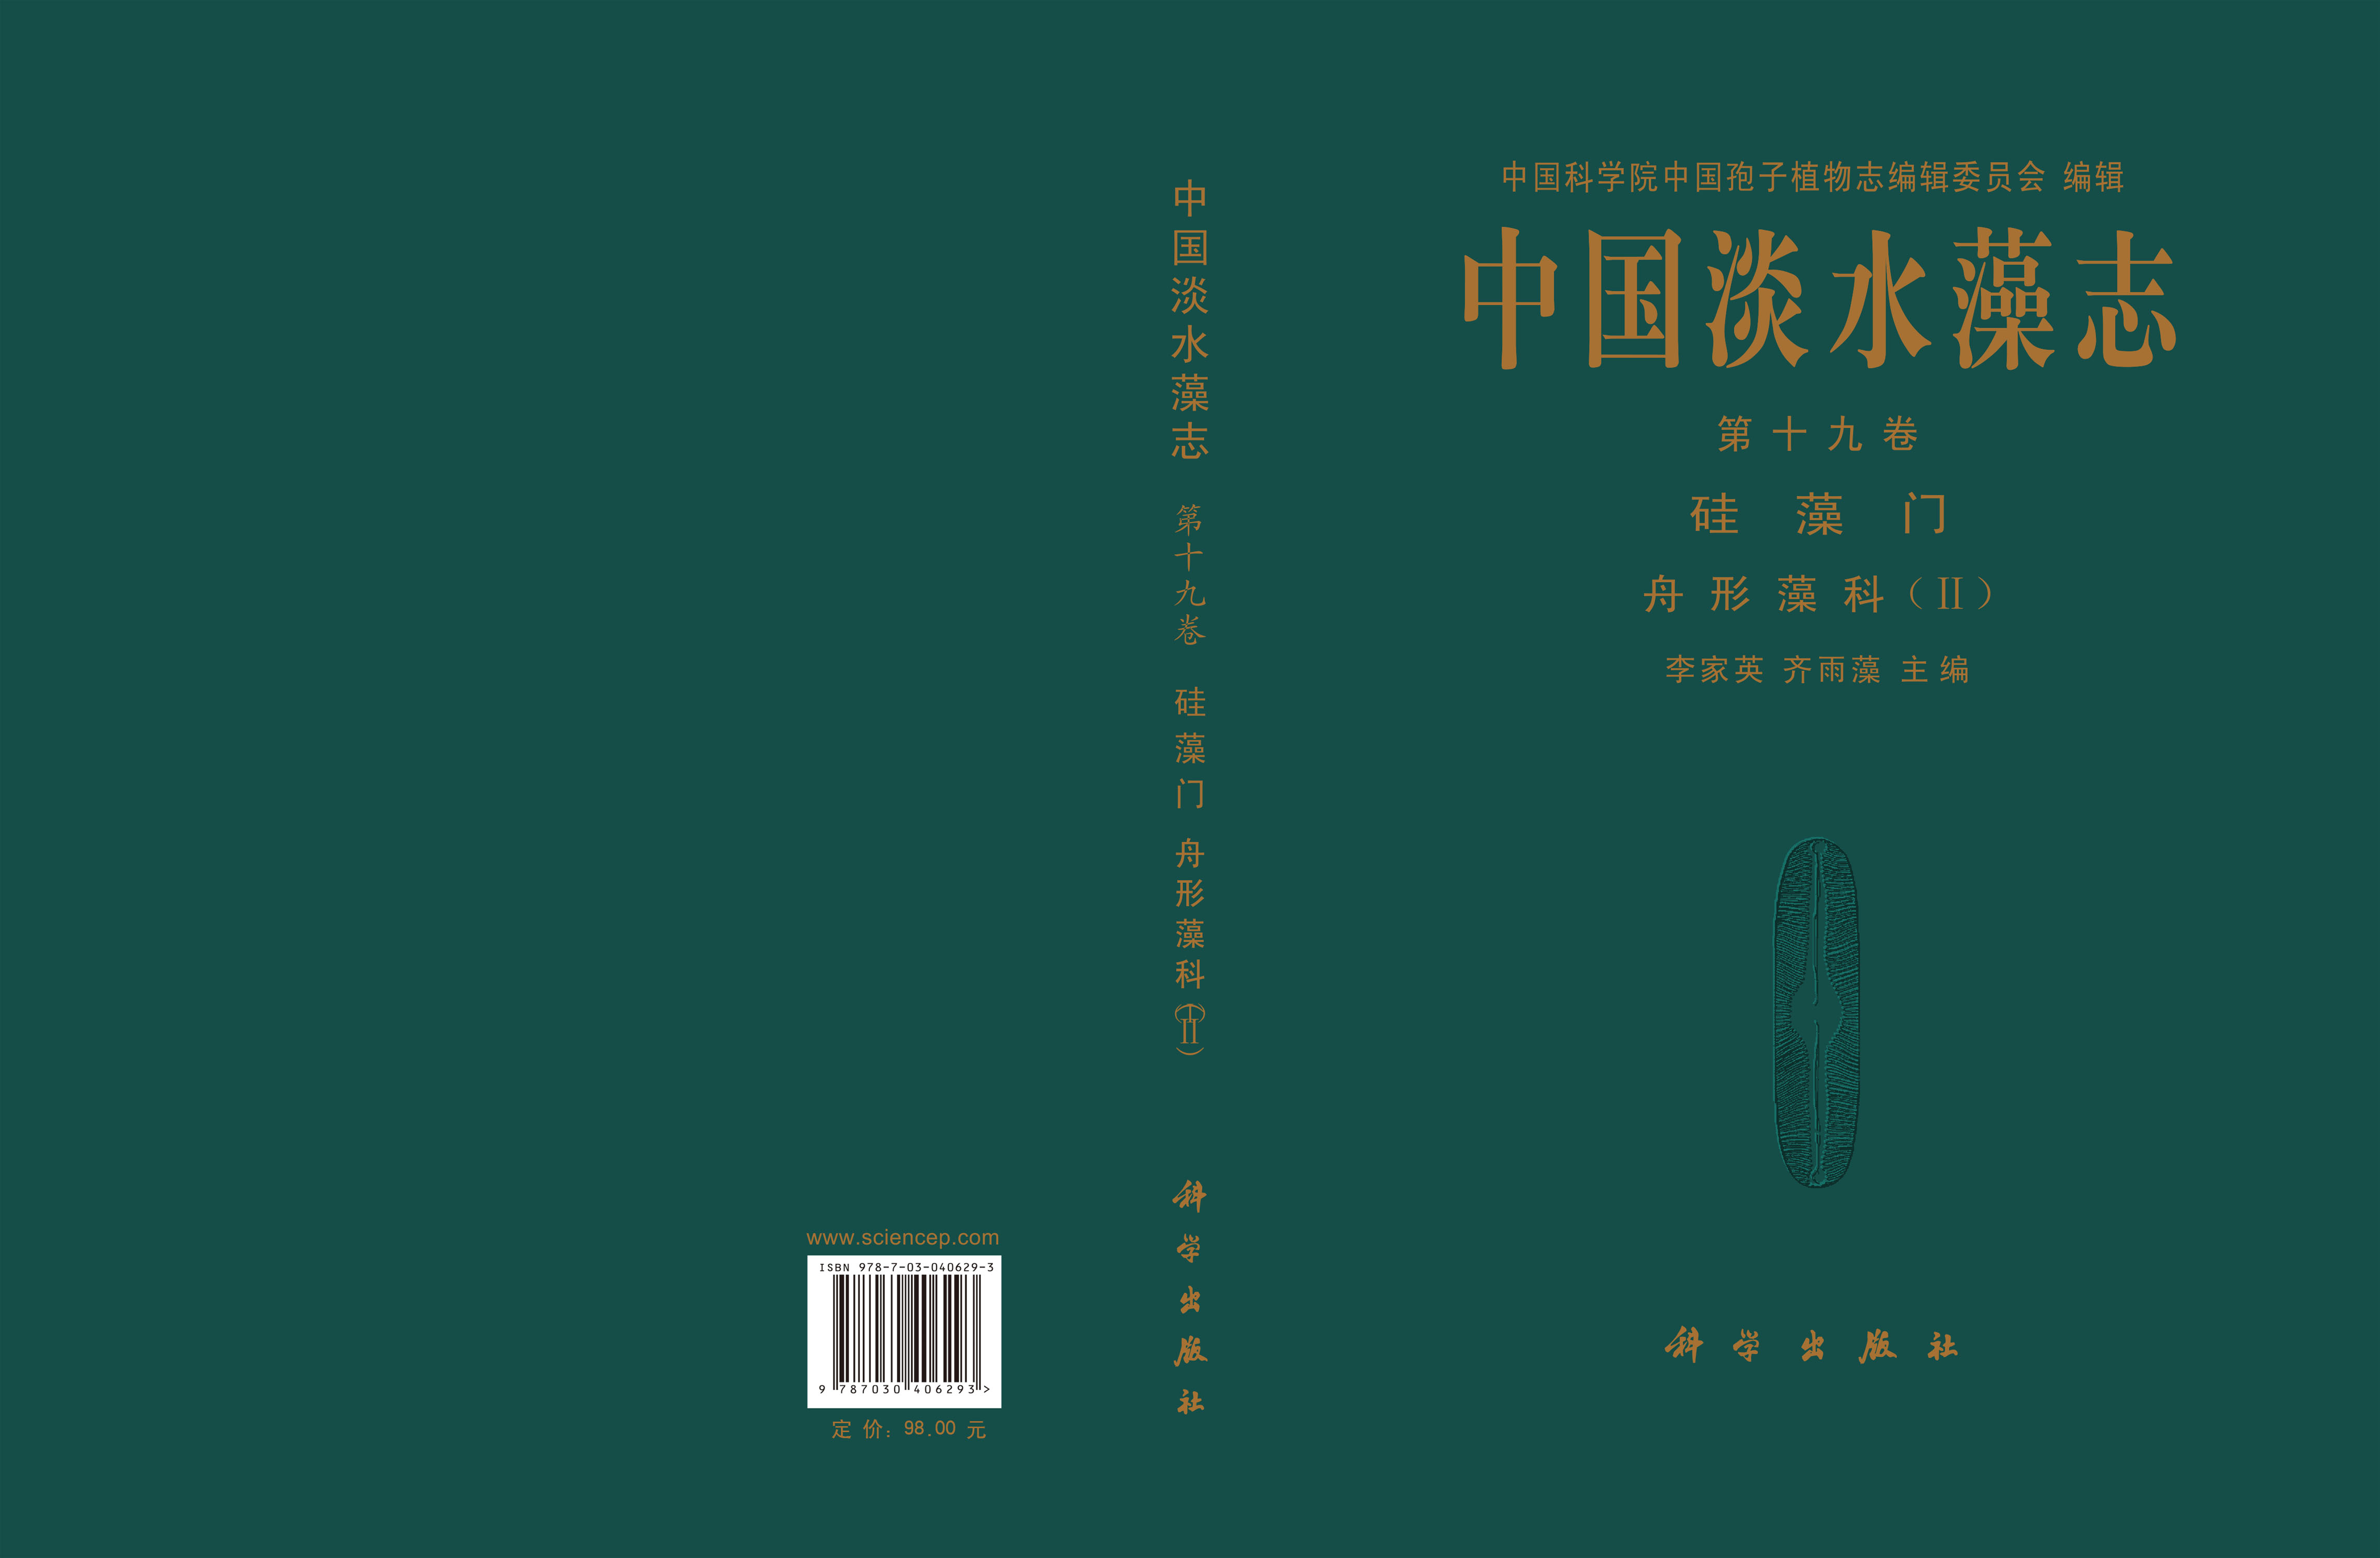 中国淡水藻志 第十九卷 硅藻门 舟形藻科(II)